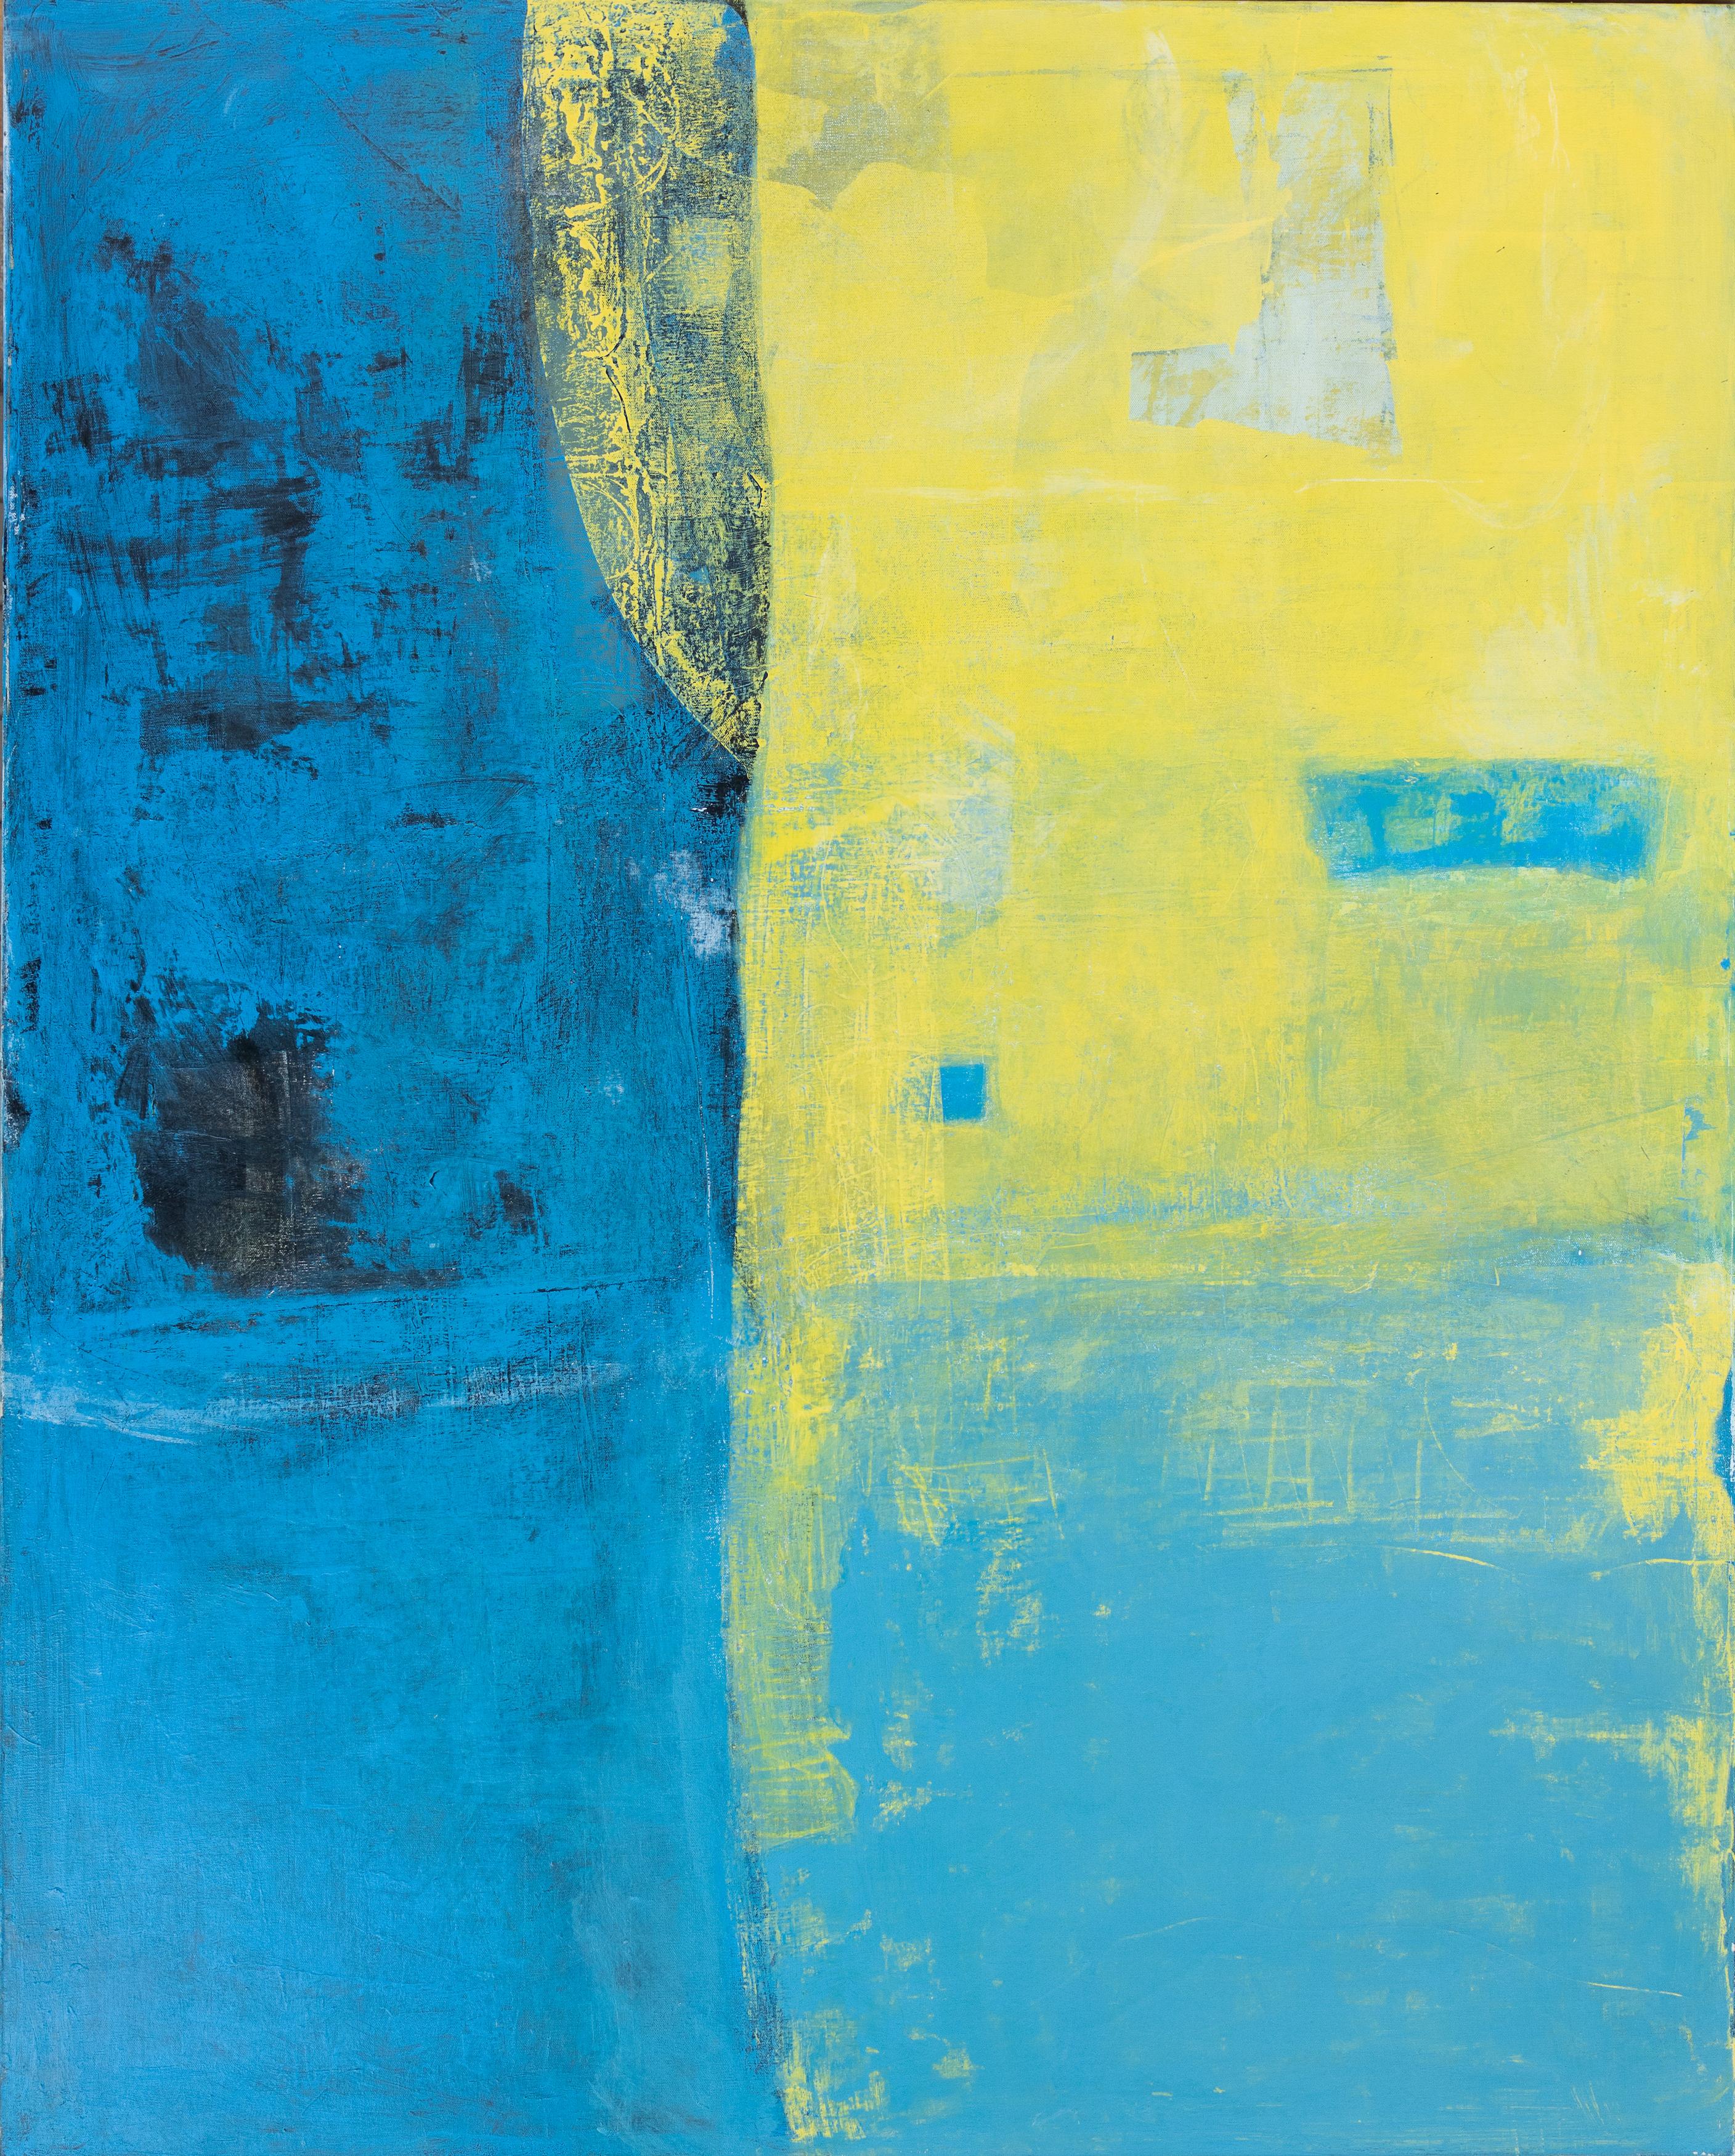 Abstract Painting Tom Reno - "Abstrait bleu et jaune" Grande peinture gestuelle à champs de couleurs